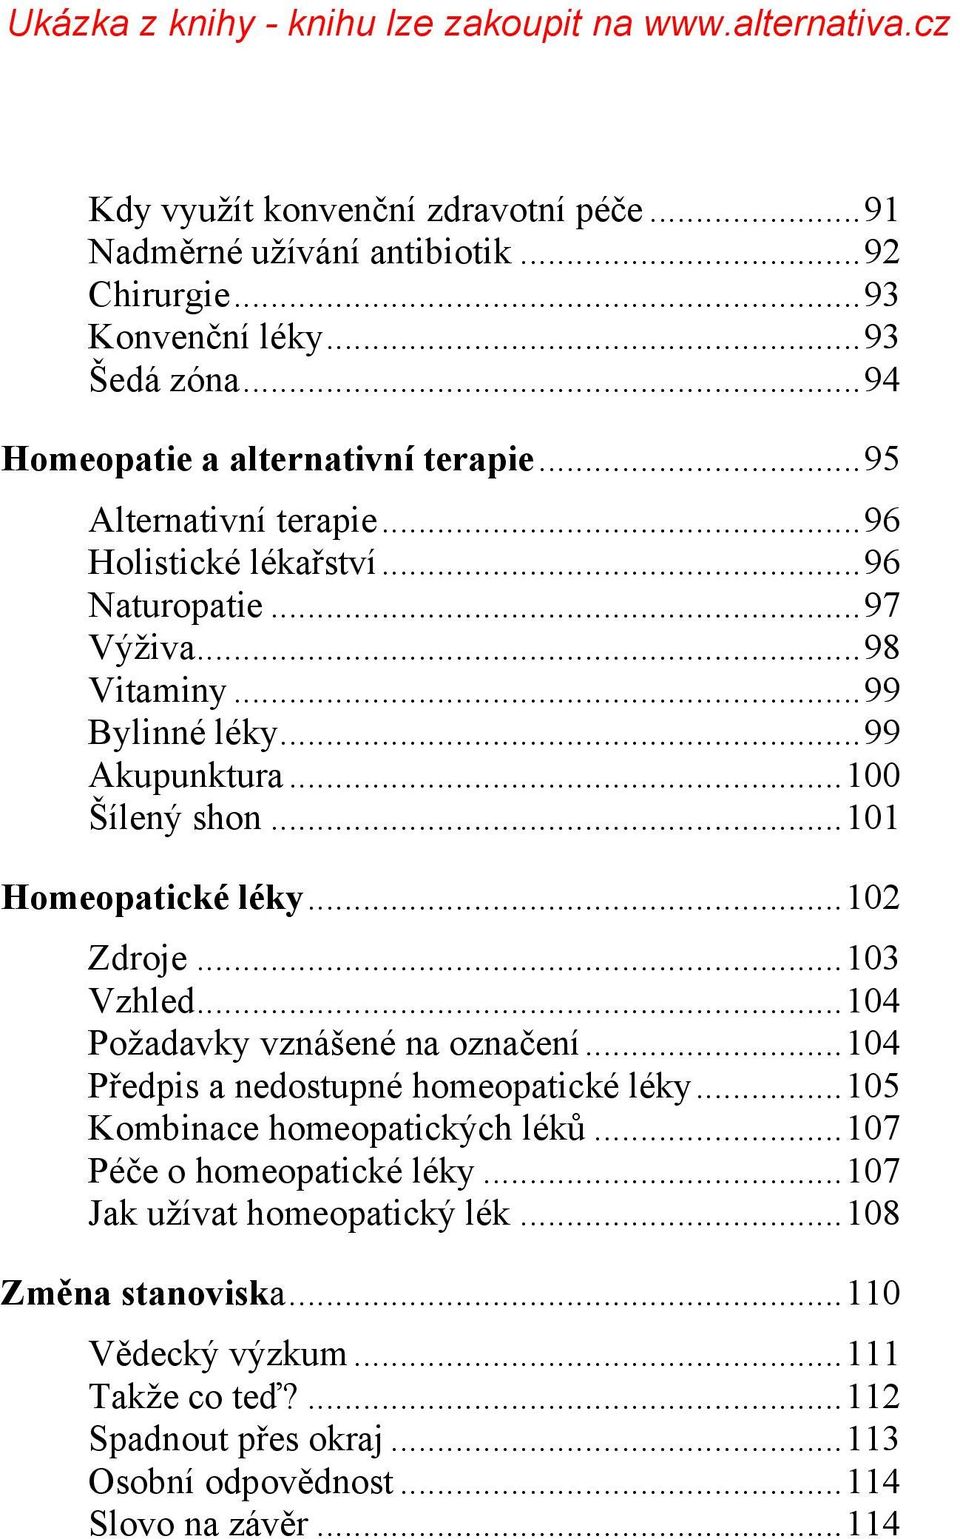 ..102 Zdroje...103 Vzhled...104 Požadavky vznášené na označení...104 Předpis a nedostupné homeopatické léky...105 Kombinace homeopatických léků.